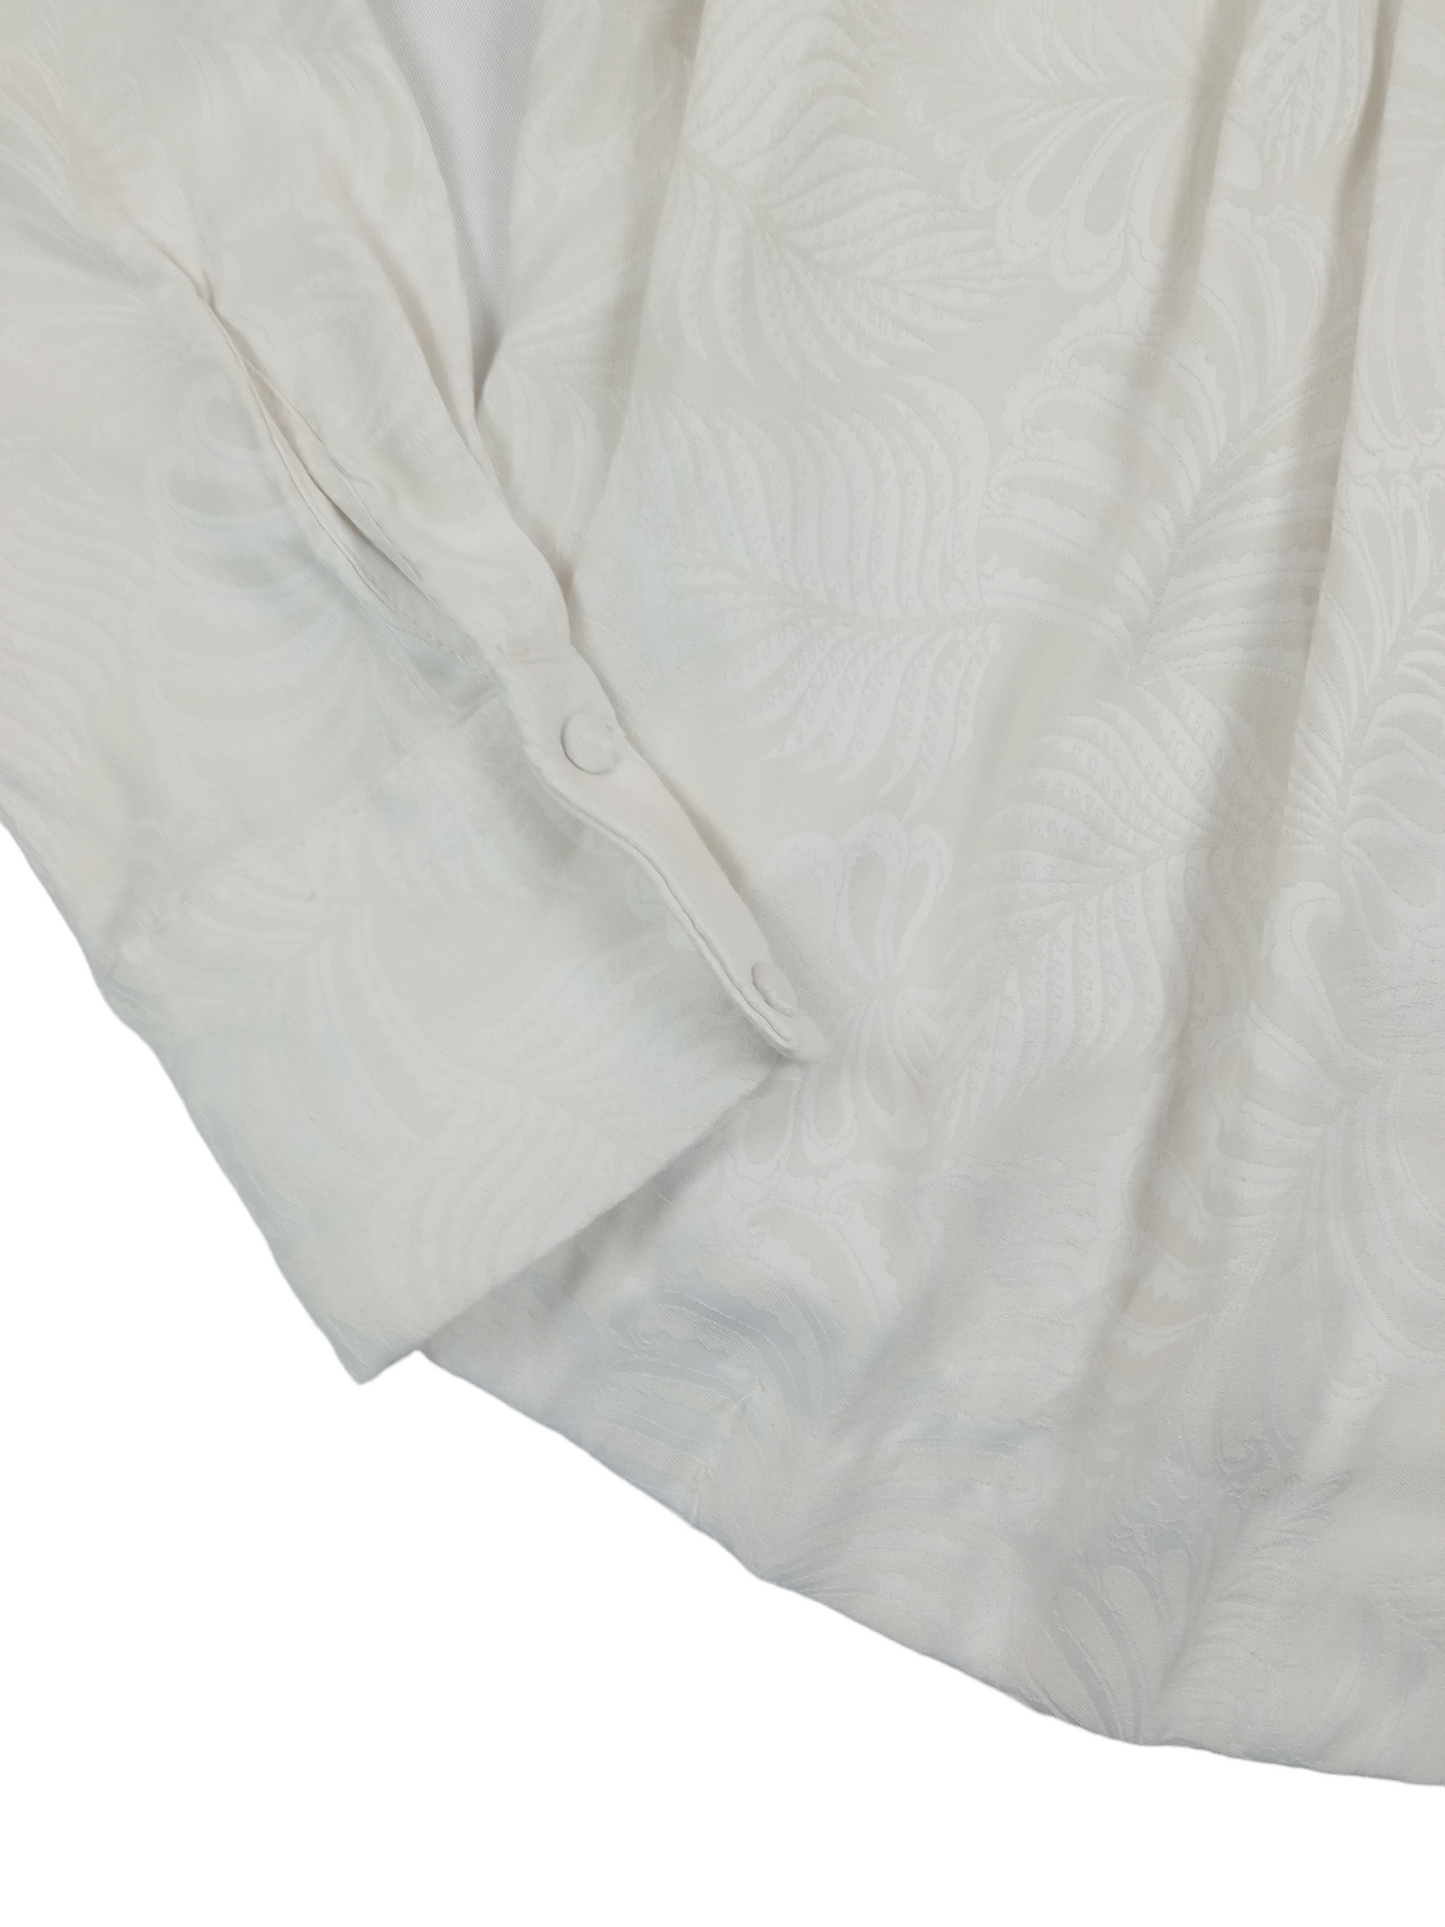 Blusa blanca invierno / Talla 32